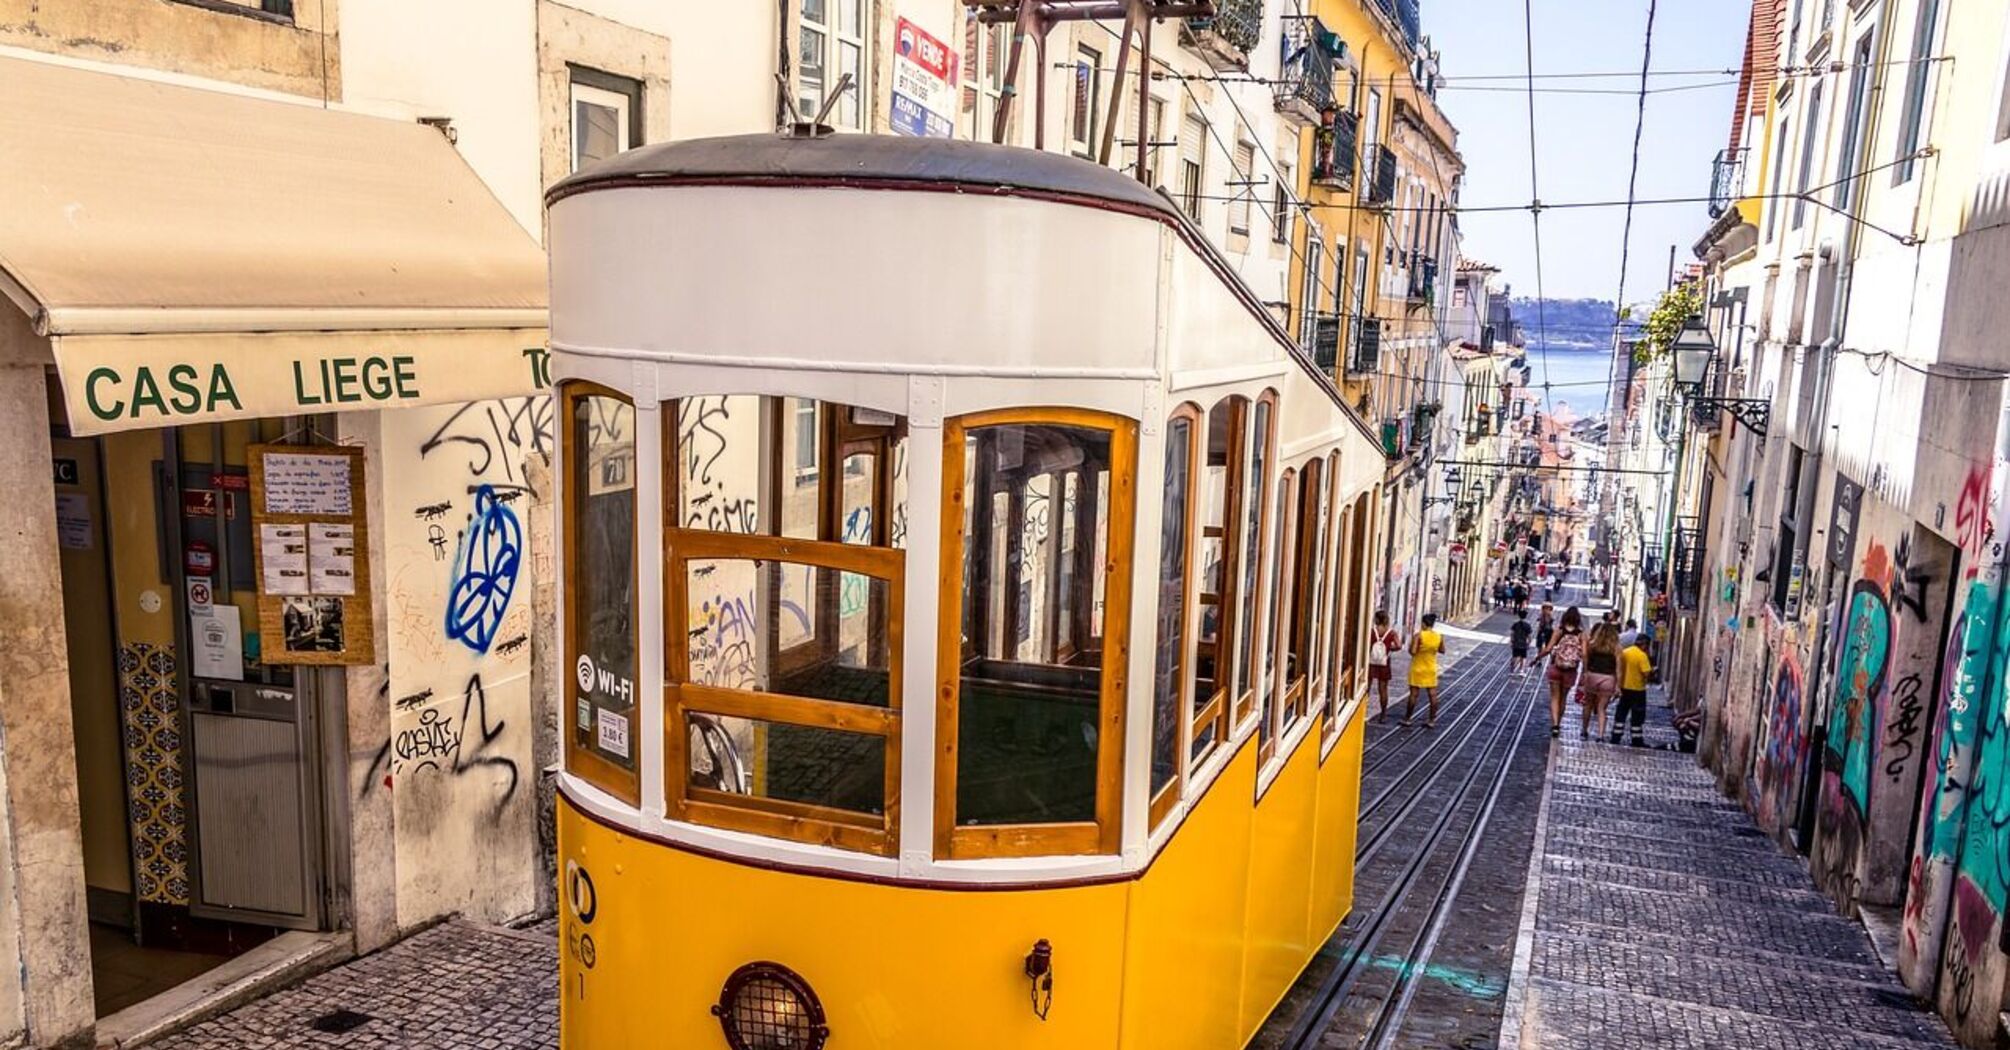 Общественный транспорт в Лиссабоне: как пользоваться трамваями, фуникулерами, метро и т.д.